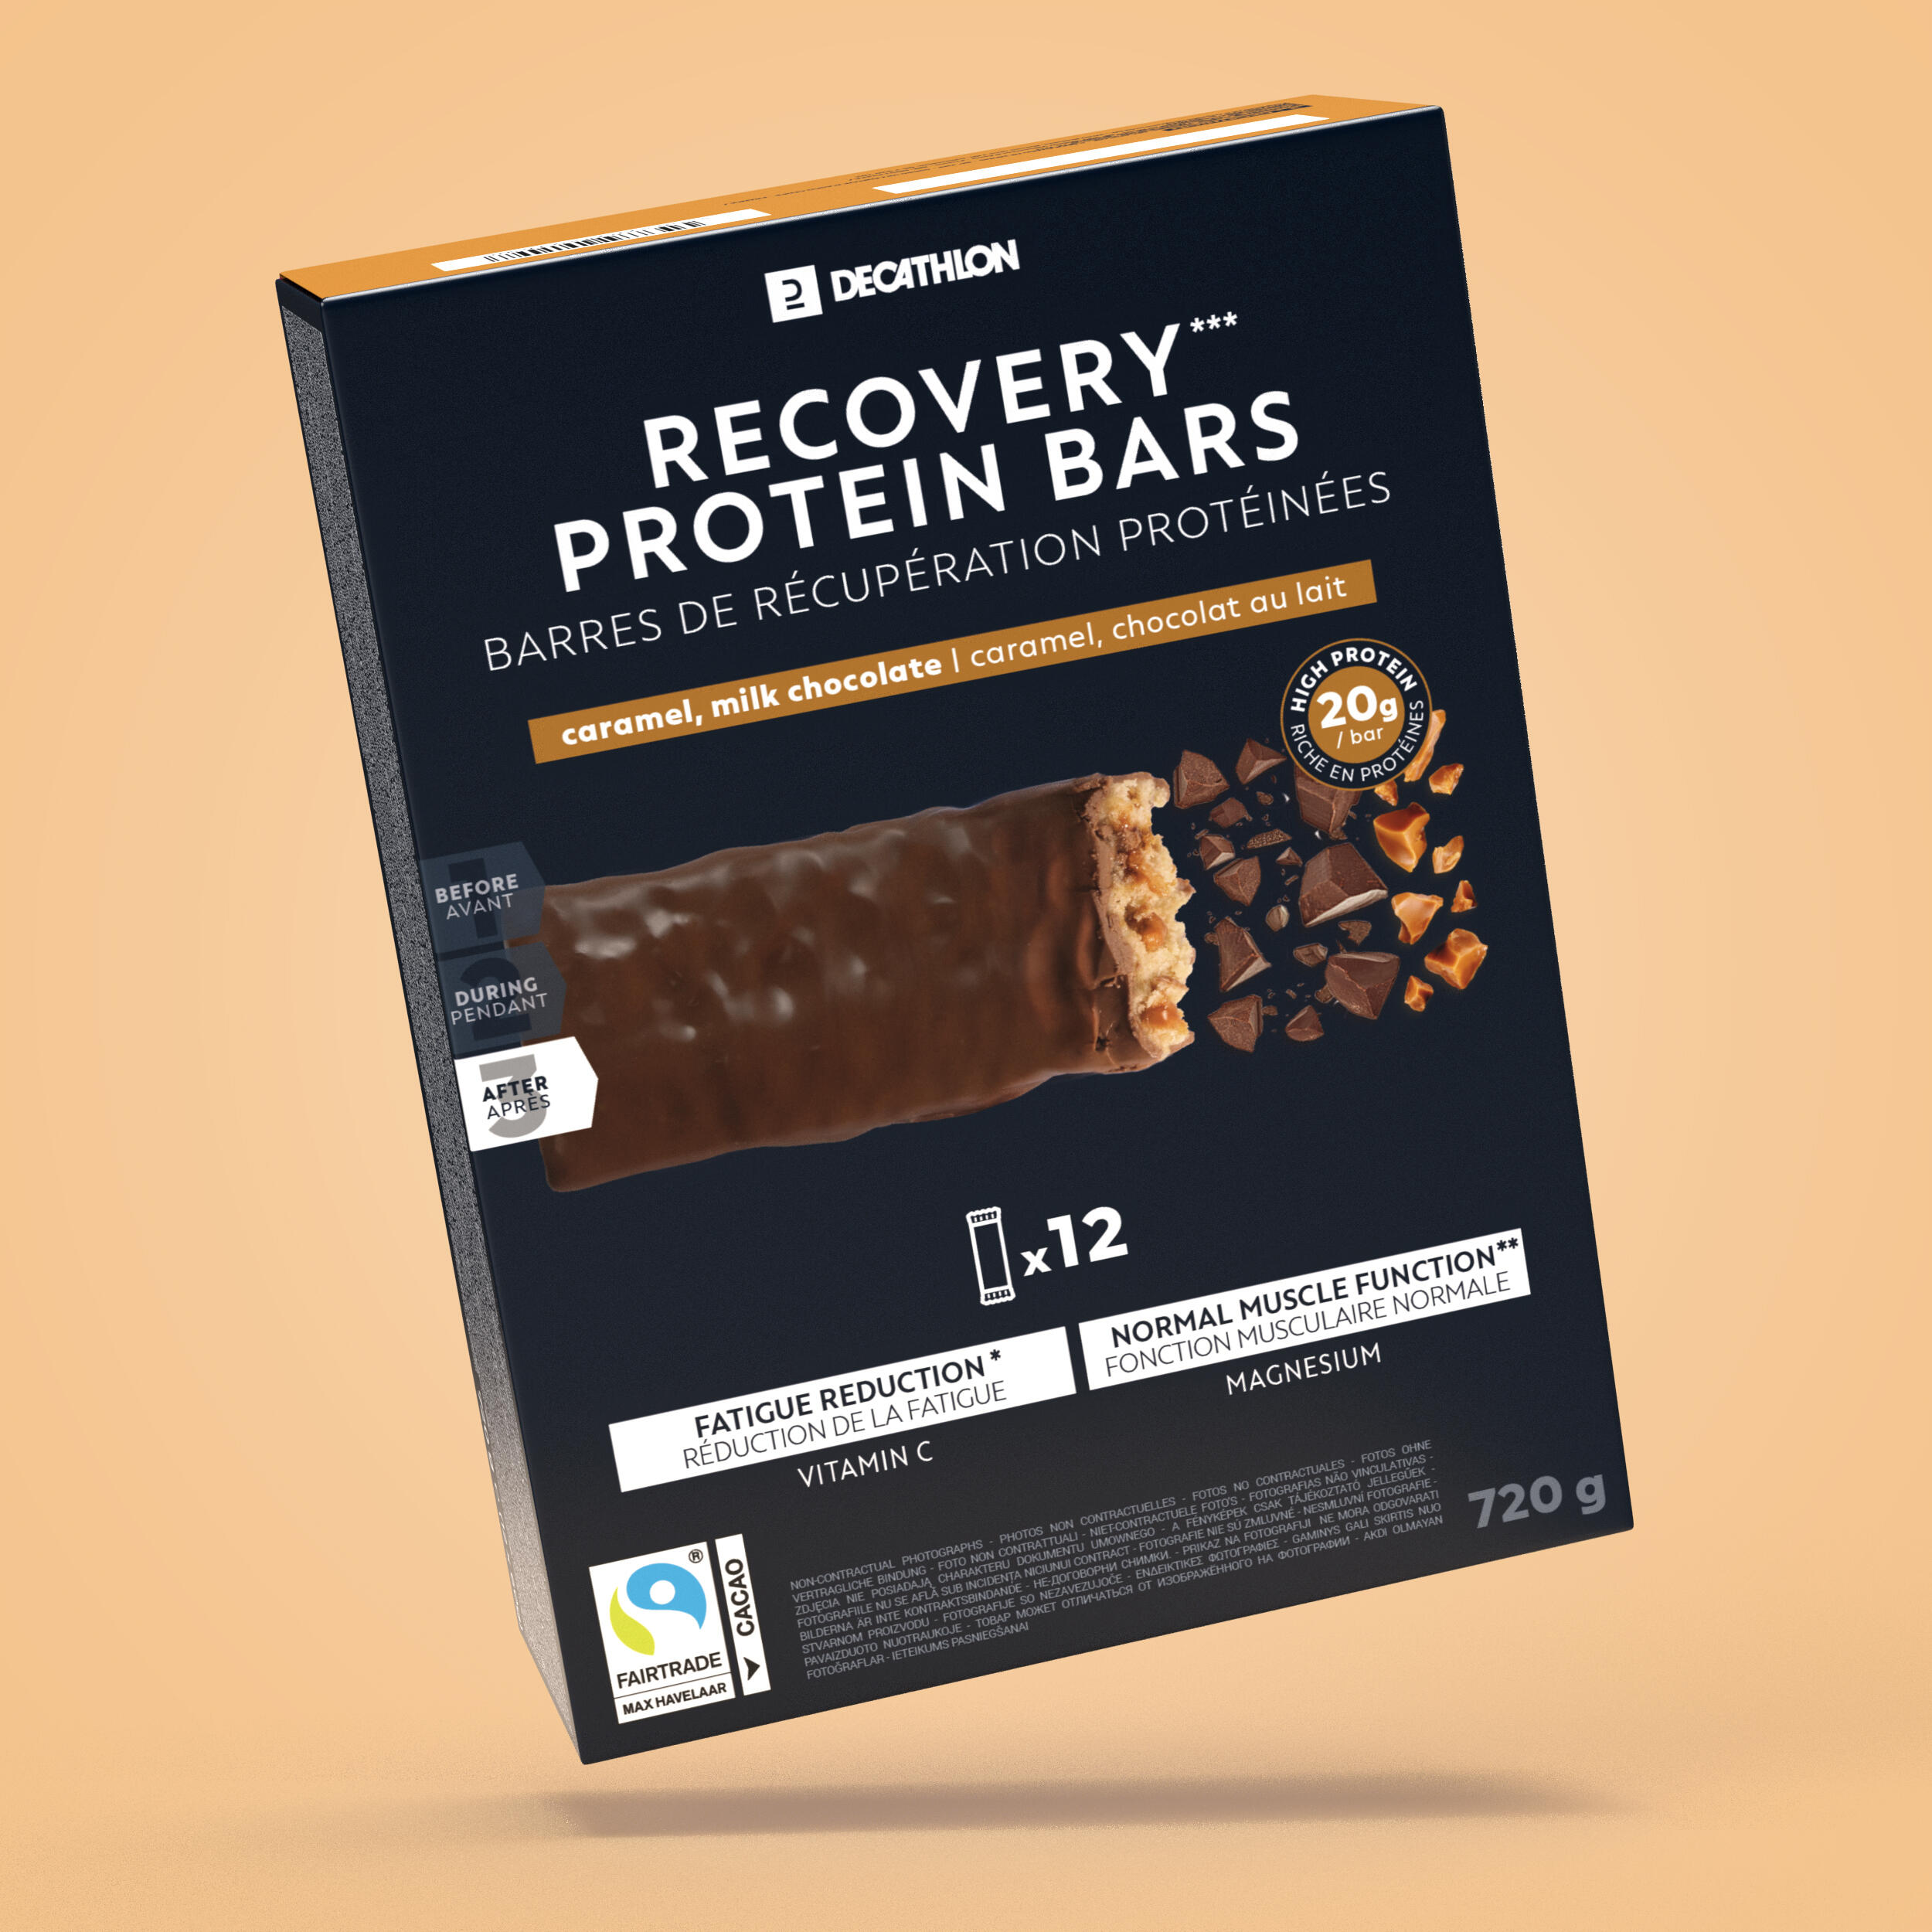 Baton proteine pentru recuperare, cu aromă Ciocolată și Caramel *12 *12 imagine 2022 topbody.ro